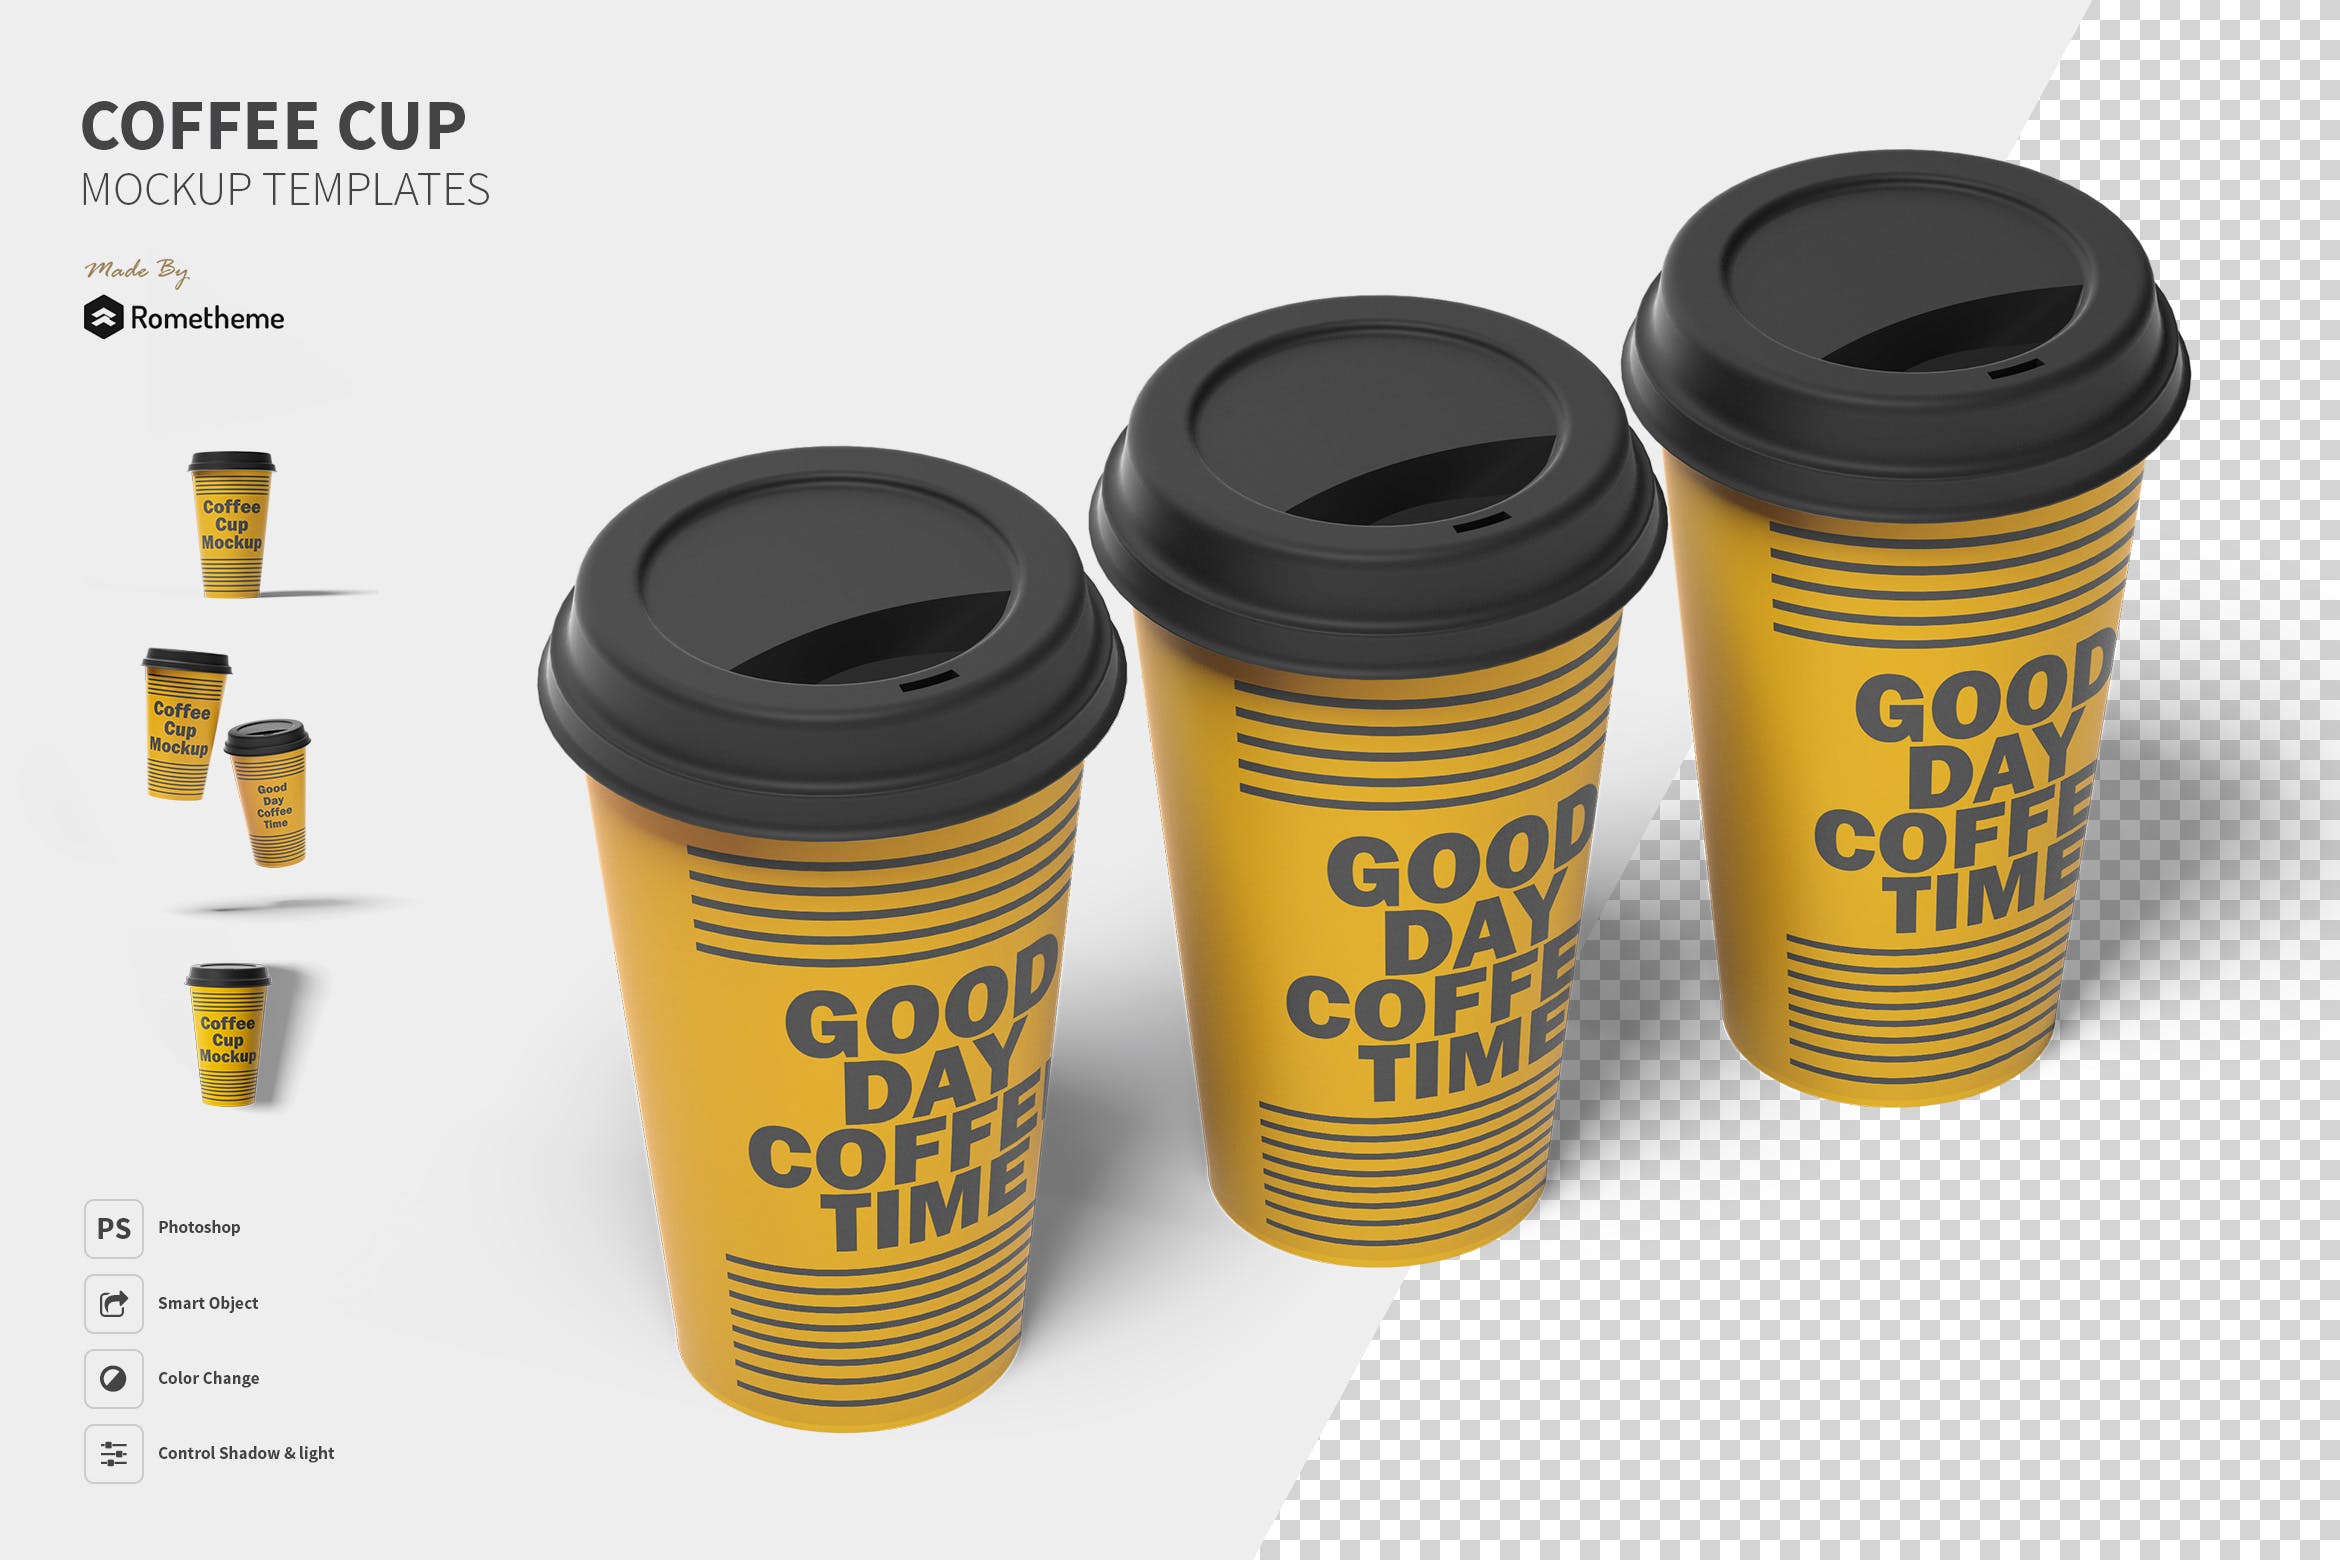 一次性咖啡纸杯设计图素材库精选 Coffee Cup Mockup Set FH插图